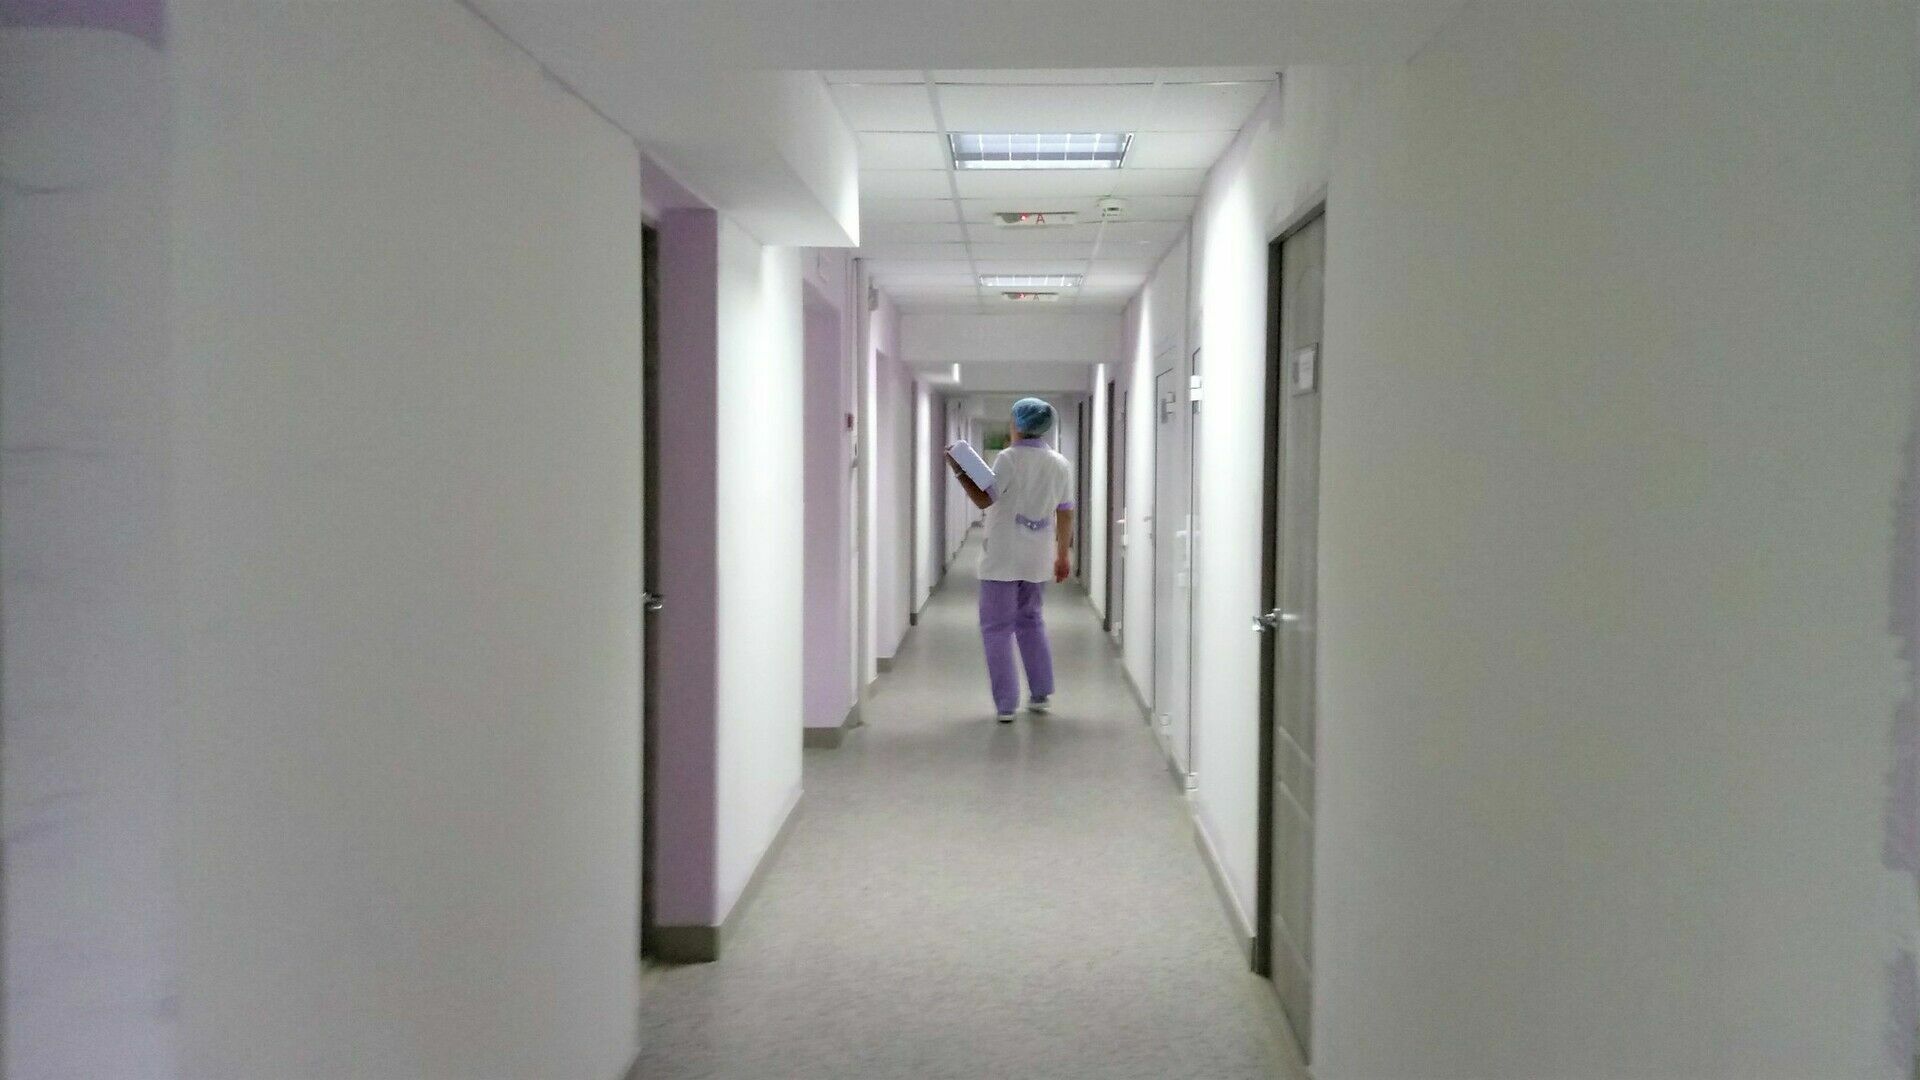 Дневной стационар поликлиники в Карелии закрыли из-за коронавируса